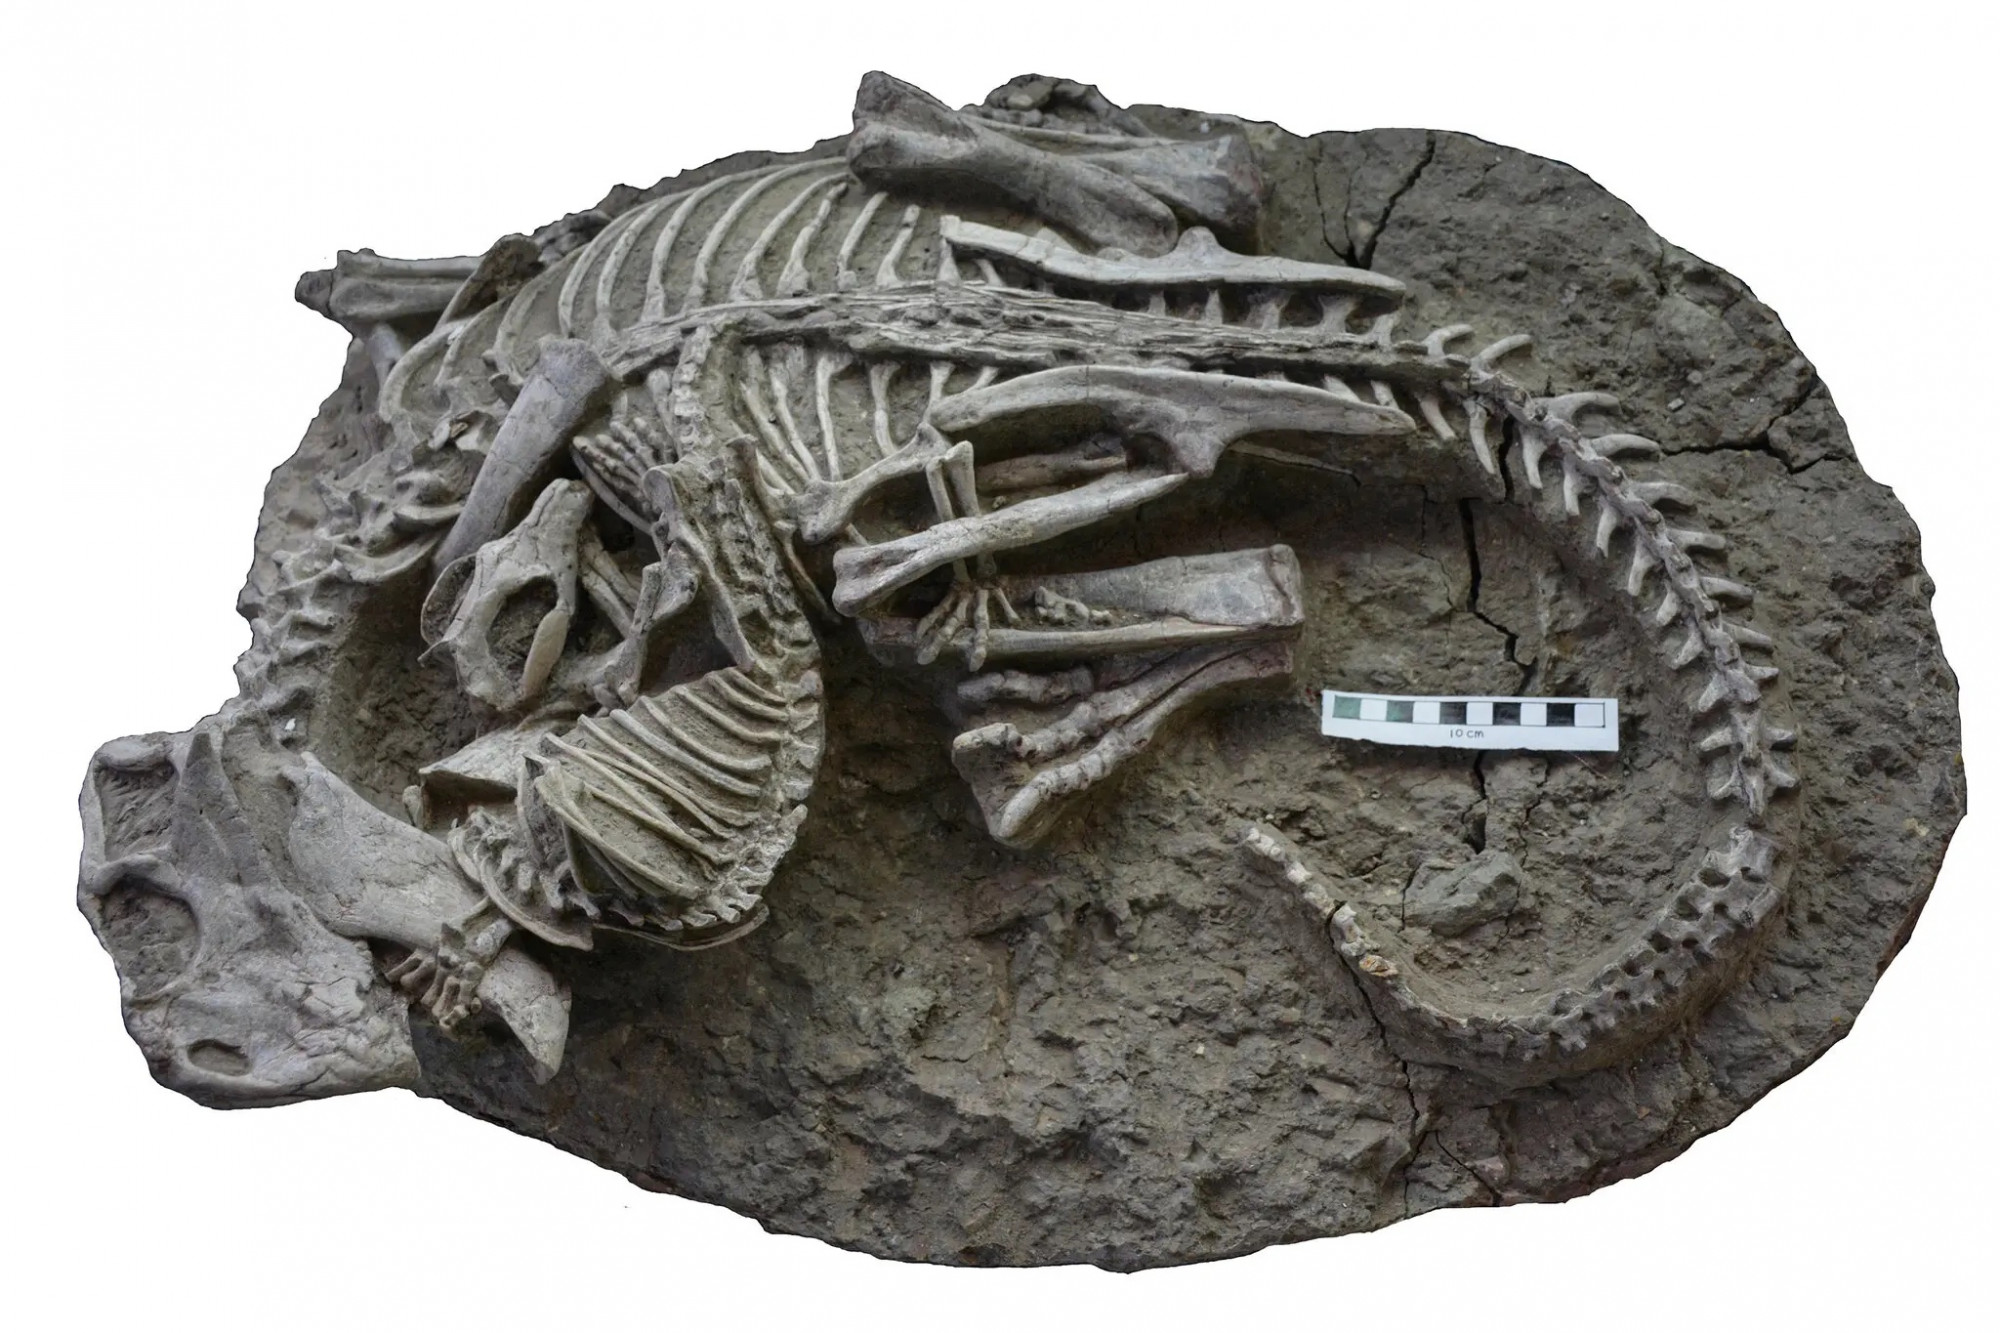 Kínai leletek mutatnak rá, hogy emlősök is vadászhattak dinoszauruszokra